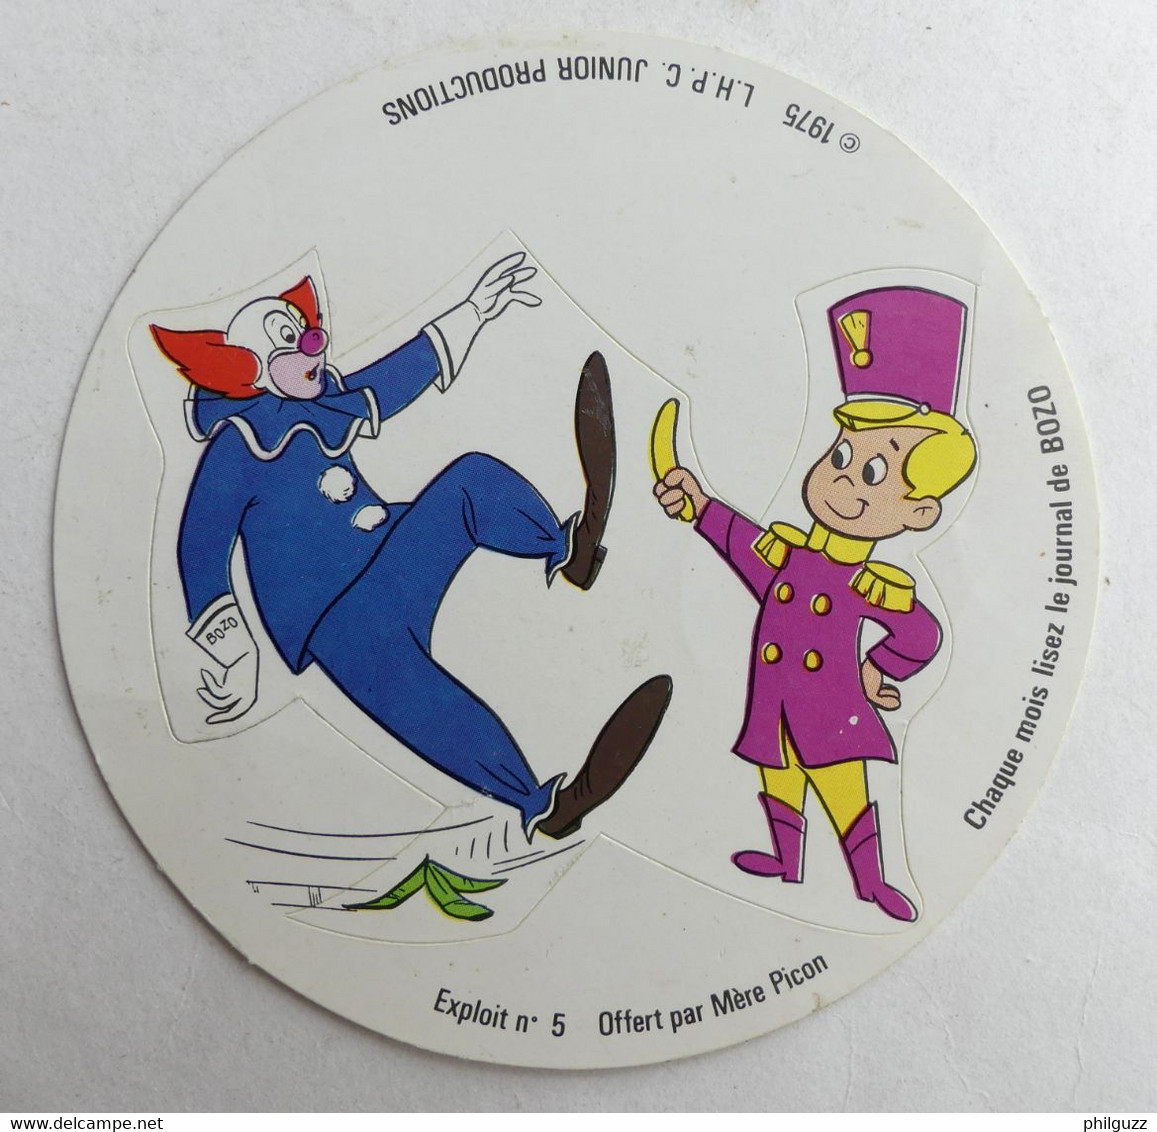 AUTOCOLLANT MERE PICON BOZO LE CLOWN EXPLOIT N°5 1975 - Stickers